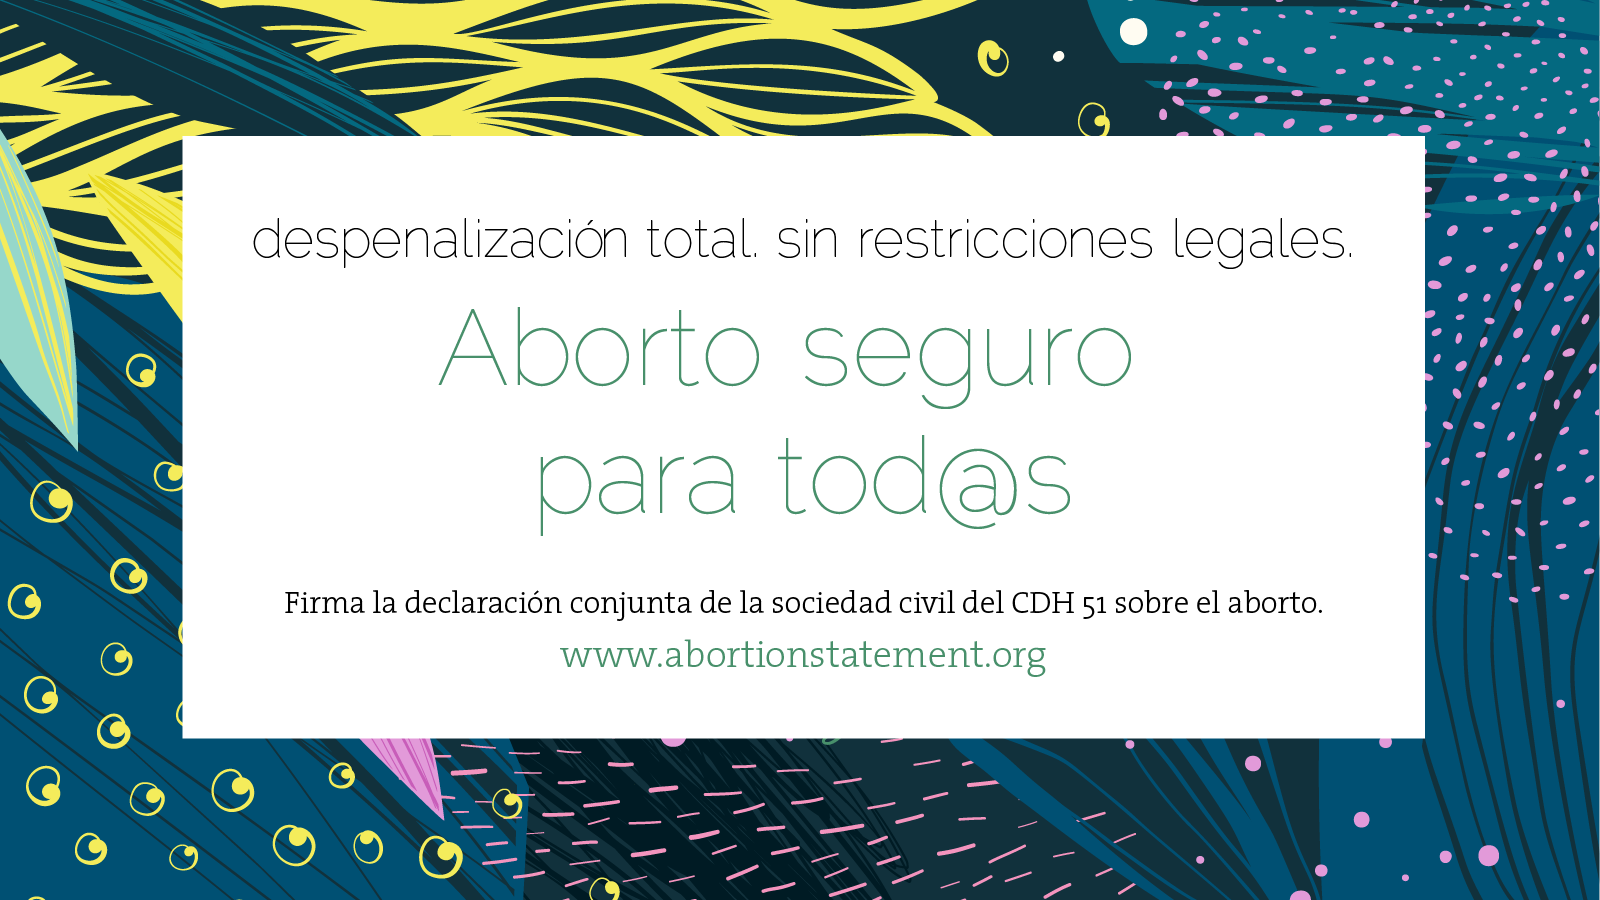 De fondo, un diseño orgánico en azul, verde, amarillo y rosa. TEXTO: despenalización total. sin restricciones legales. Aborto seguro para tod@s. Firma la declaración conjunta de la sociedad civil del CDH 51 sobre el aborto.